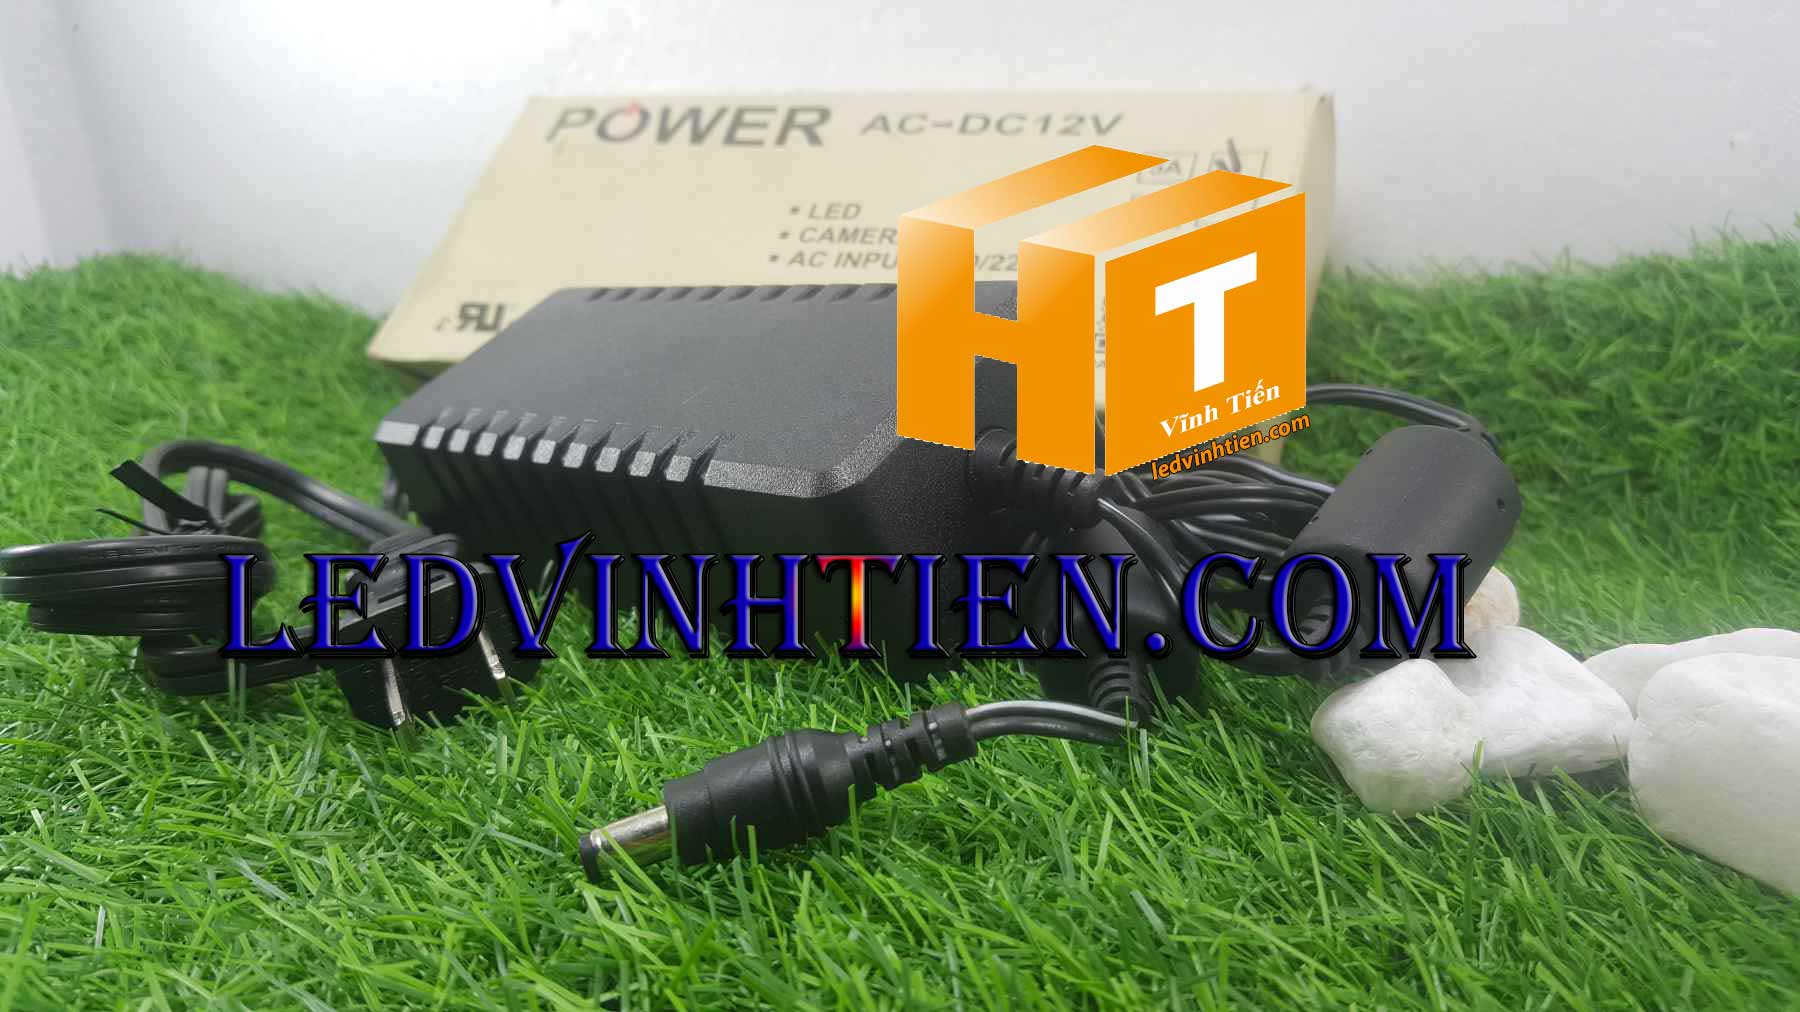 Adapter nguồn 12V 5A 60W sony, hay còn gọi là adapter 12v 5a sony dùng cấp nguồn dc12v cho nhiều thiết bị điện tử trên thị trường hiện nay như máy chấm công, đèn led, camera, thiết bị mạng Điện áp đầu vào: AC 100V-240V 50-60Hz. Adapter nguồn 12v 5aA sony chính hãng là bộ adapter chuyển đổi từ dòng điện xoay chiều 220v xuống 12v 5A dành riêng cho các thiết bị sử dụng dòng điện 12v